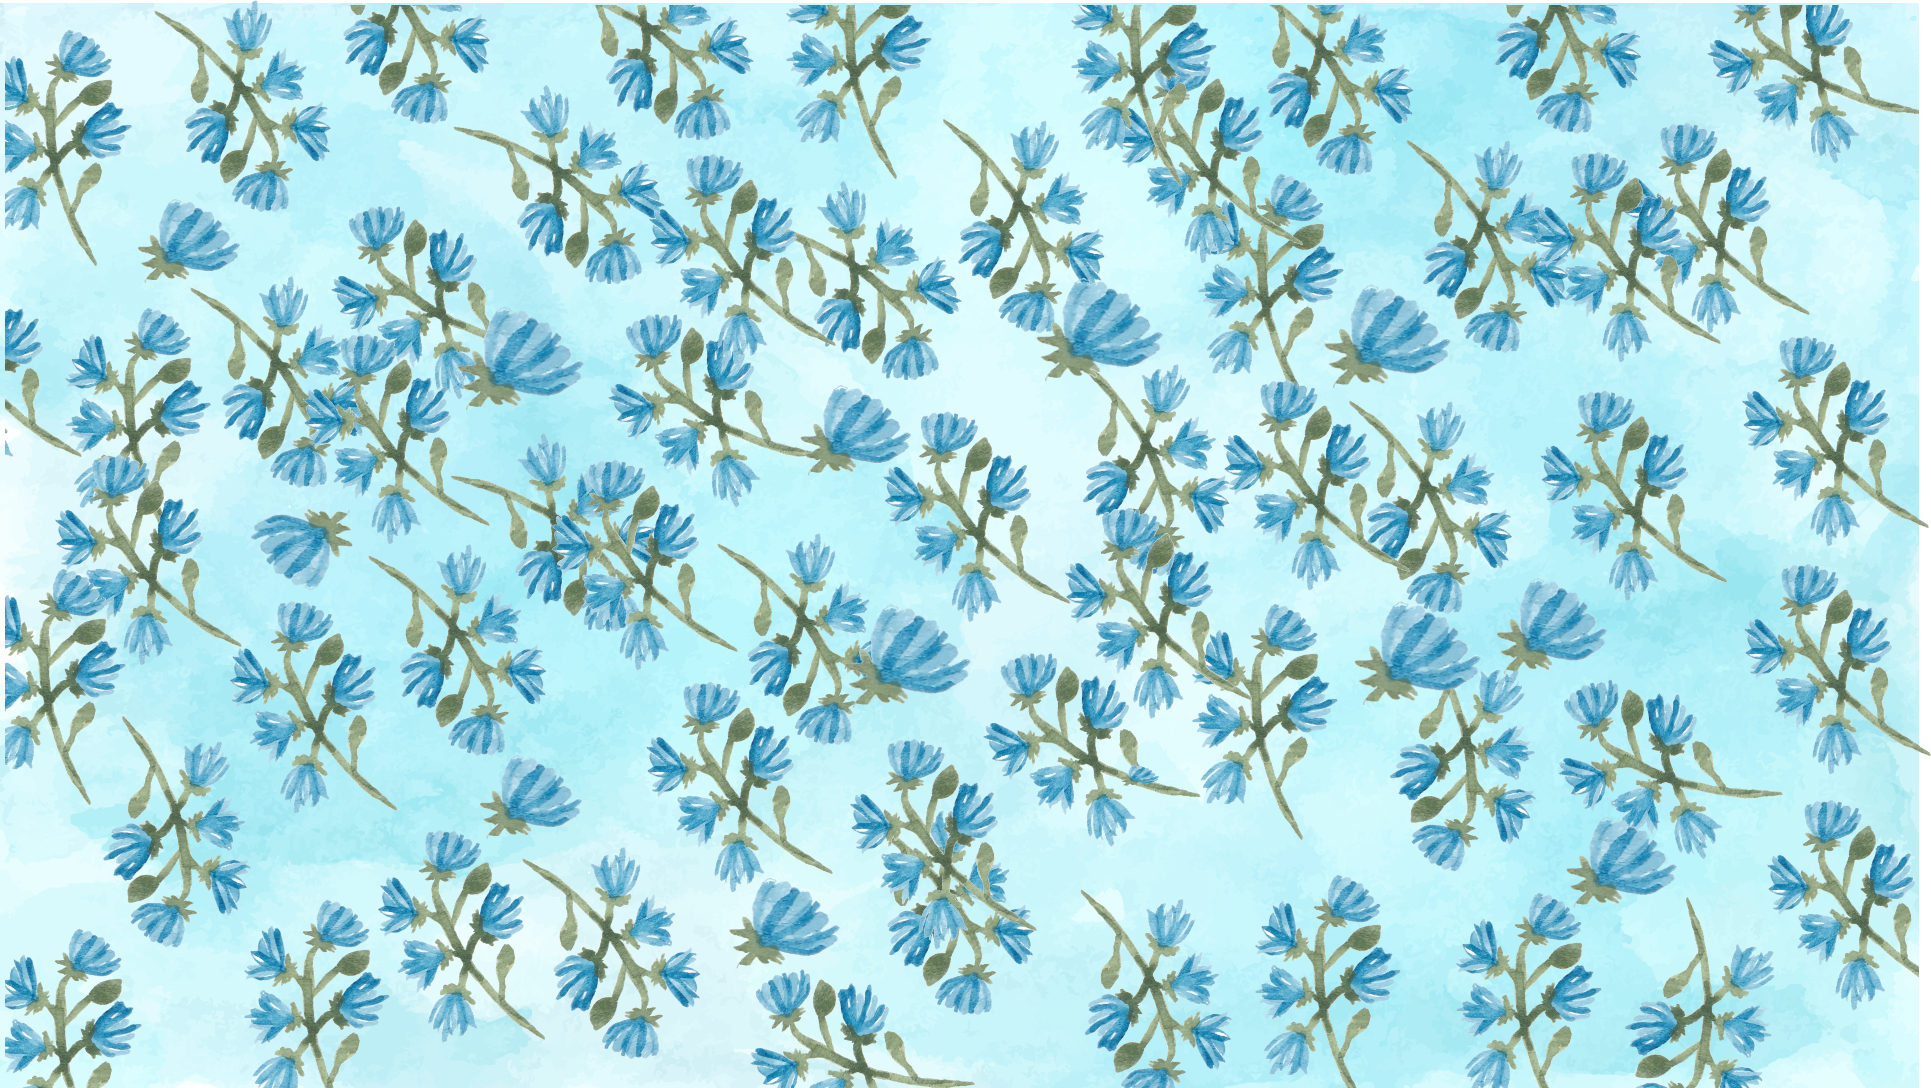 Free Sky Blue Floral Background - EPS, Illustrator, JPG, SVG | Template.net